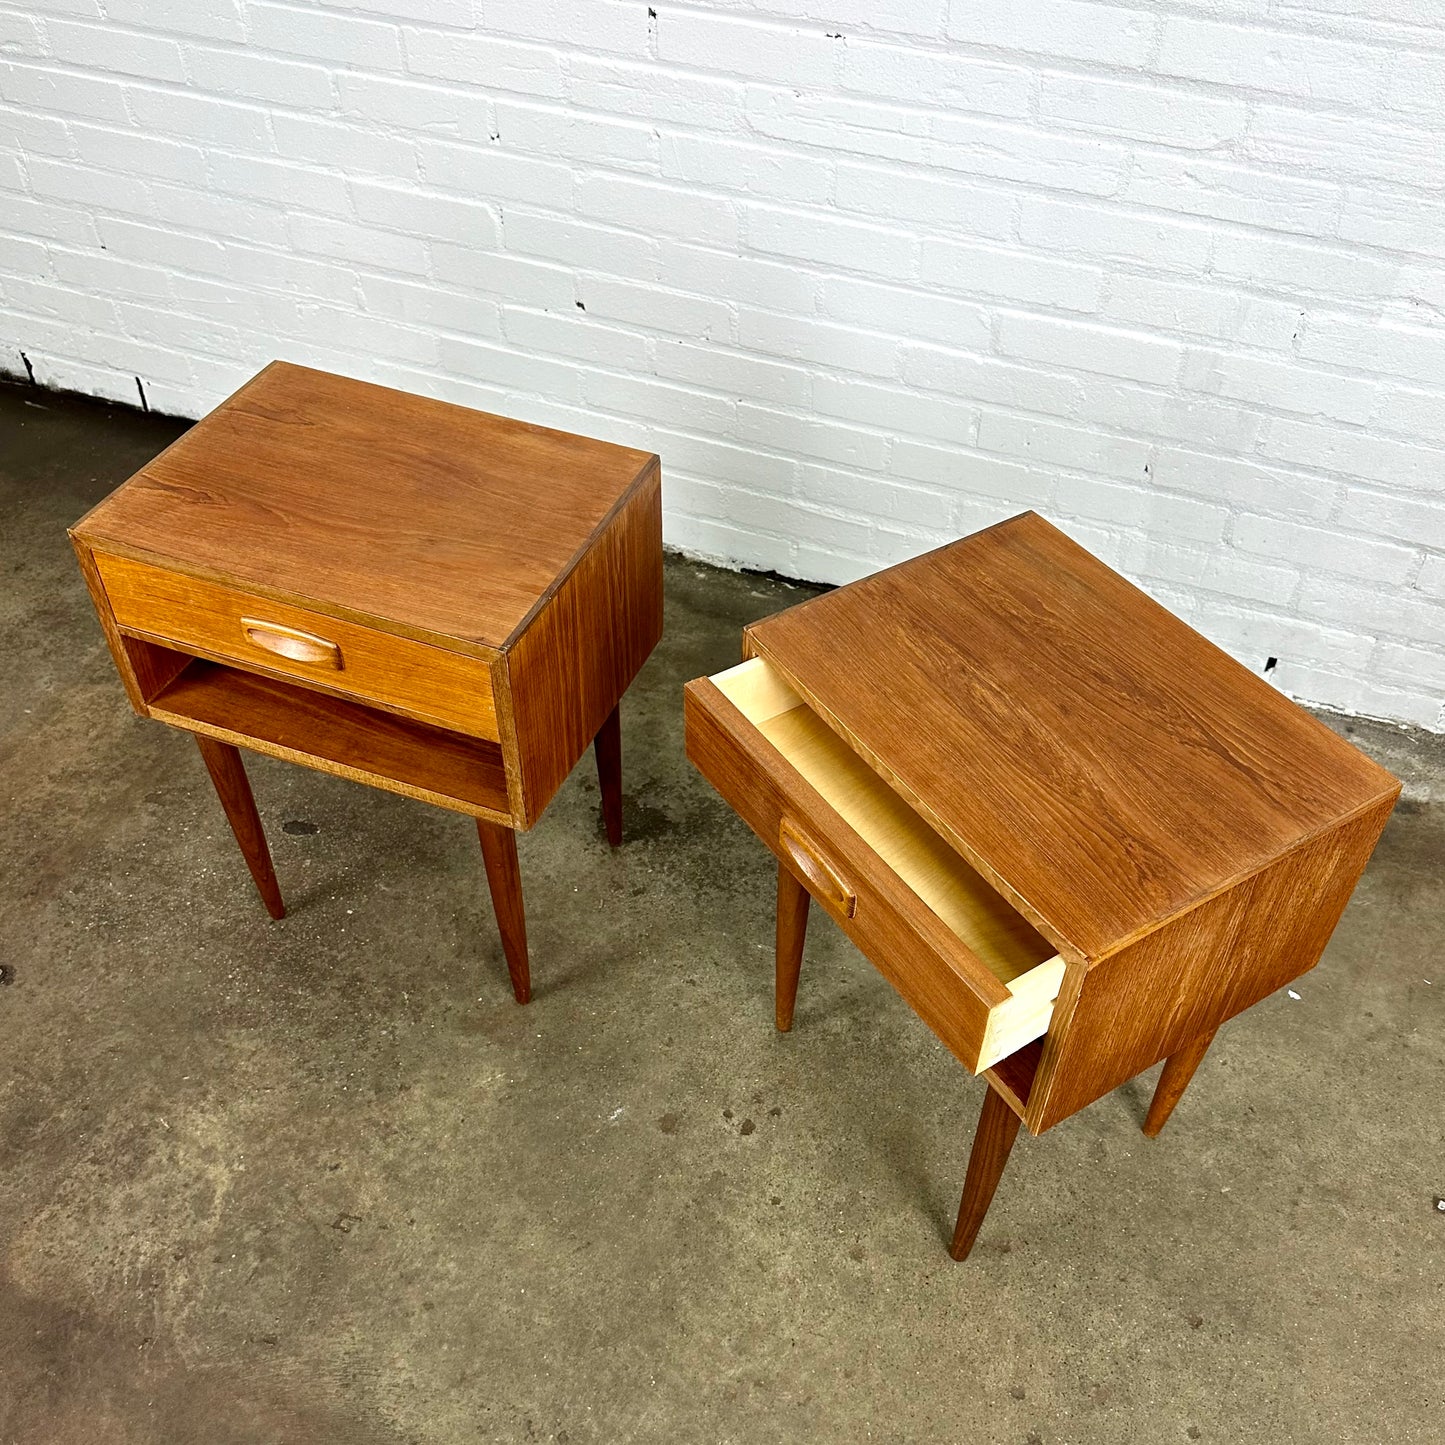 Danish design bedside tables made of teak wood - set of 2